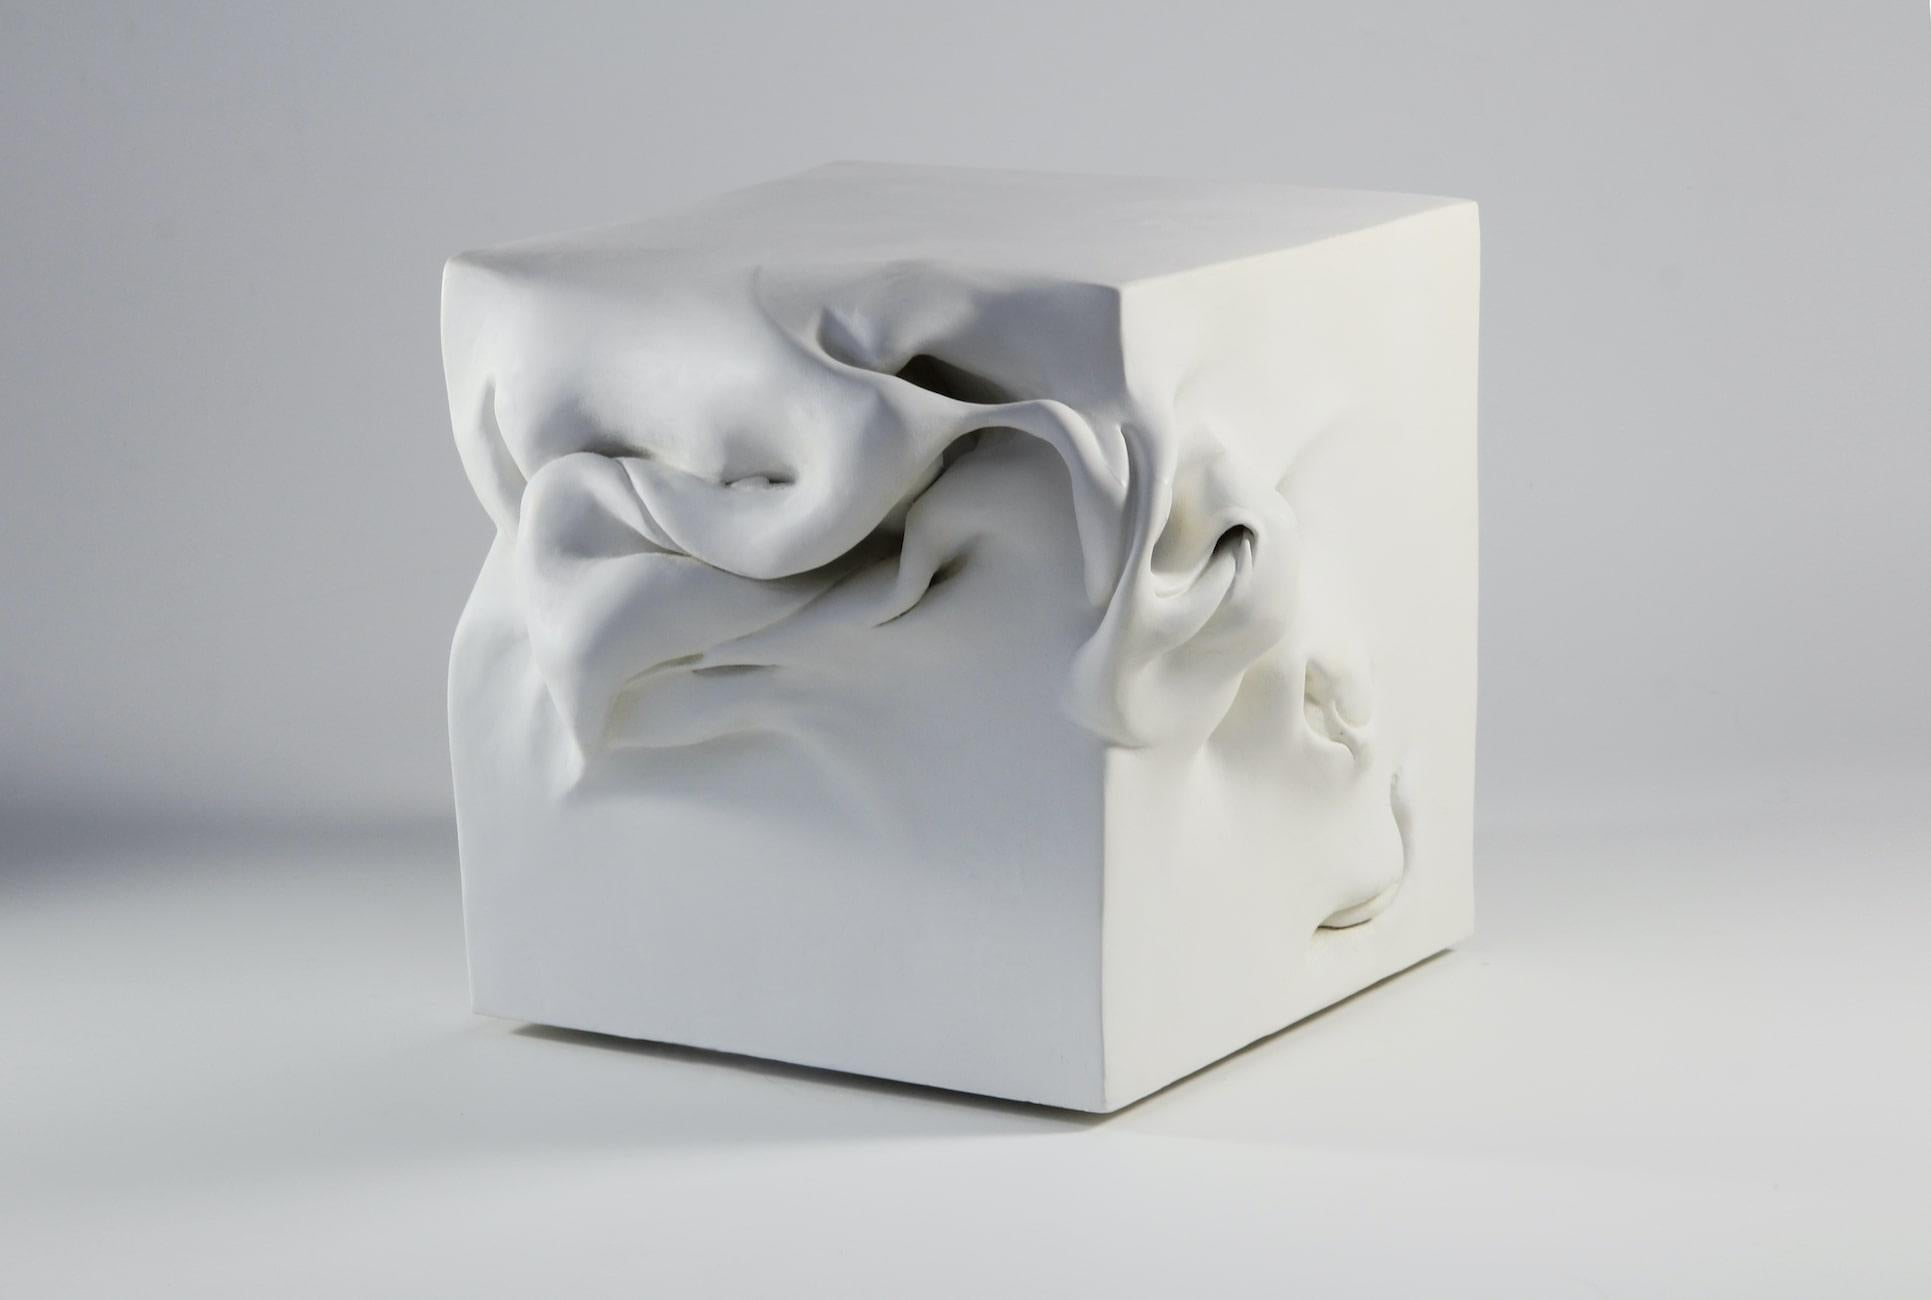 Cube 3 ist eine einzigartige bemalte, gebrannte Tonskulptur der zeitgenössischen Künstlerin Sharon Brill mit den Maßen 19 × 23 × 23 cm (7,5 × 9,1 × 9,1 in). 
Diese Skulptur ist ein vom Künstler signiertes Einzelstück und wird mit einem